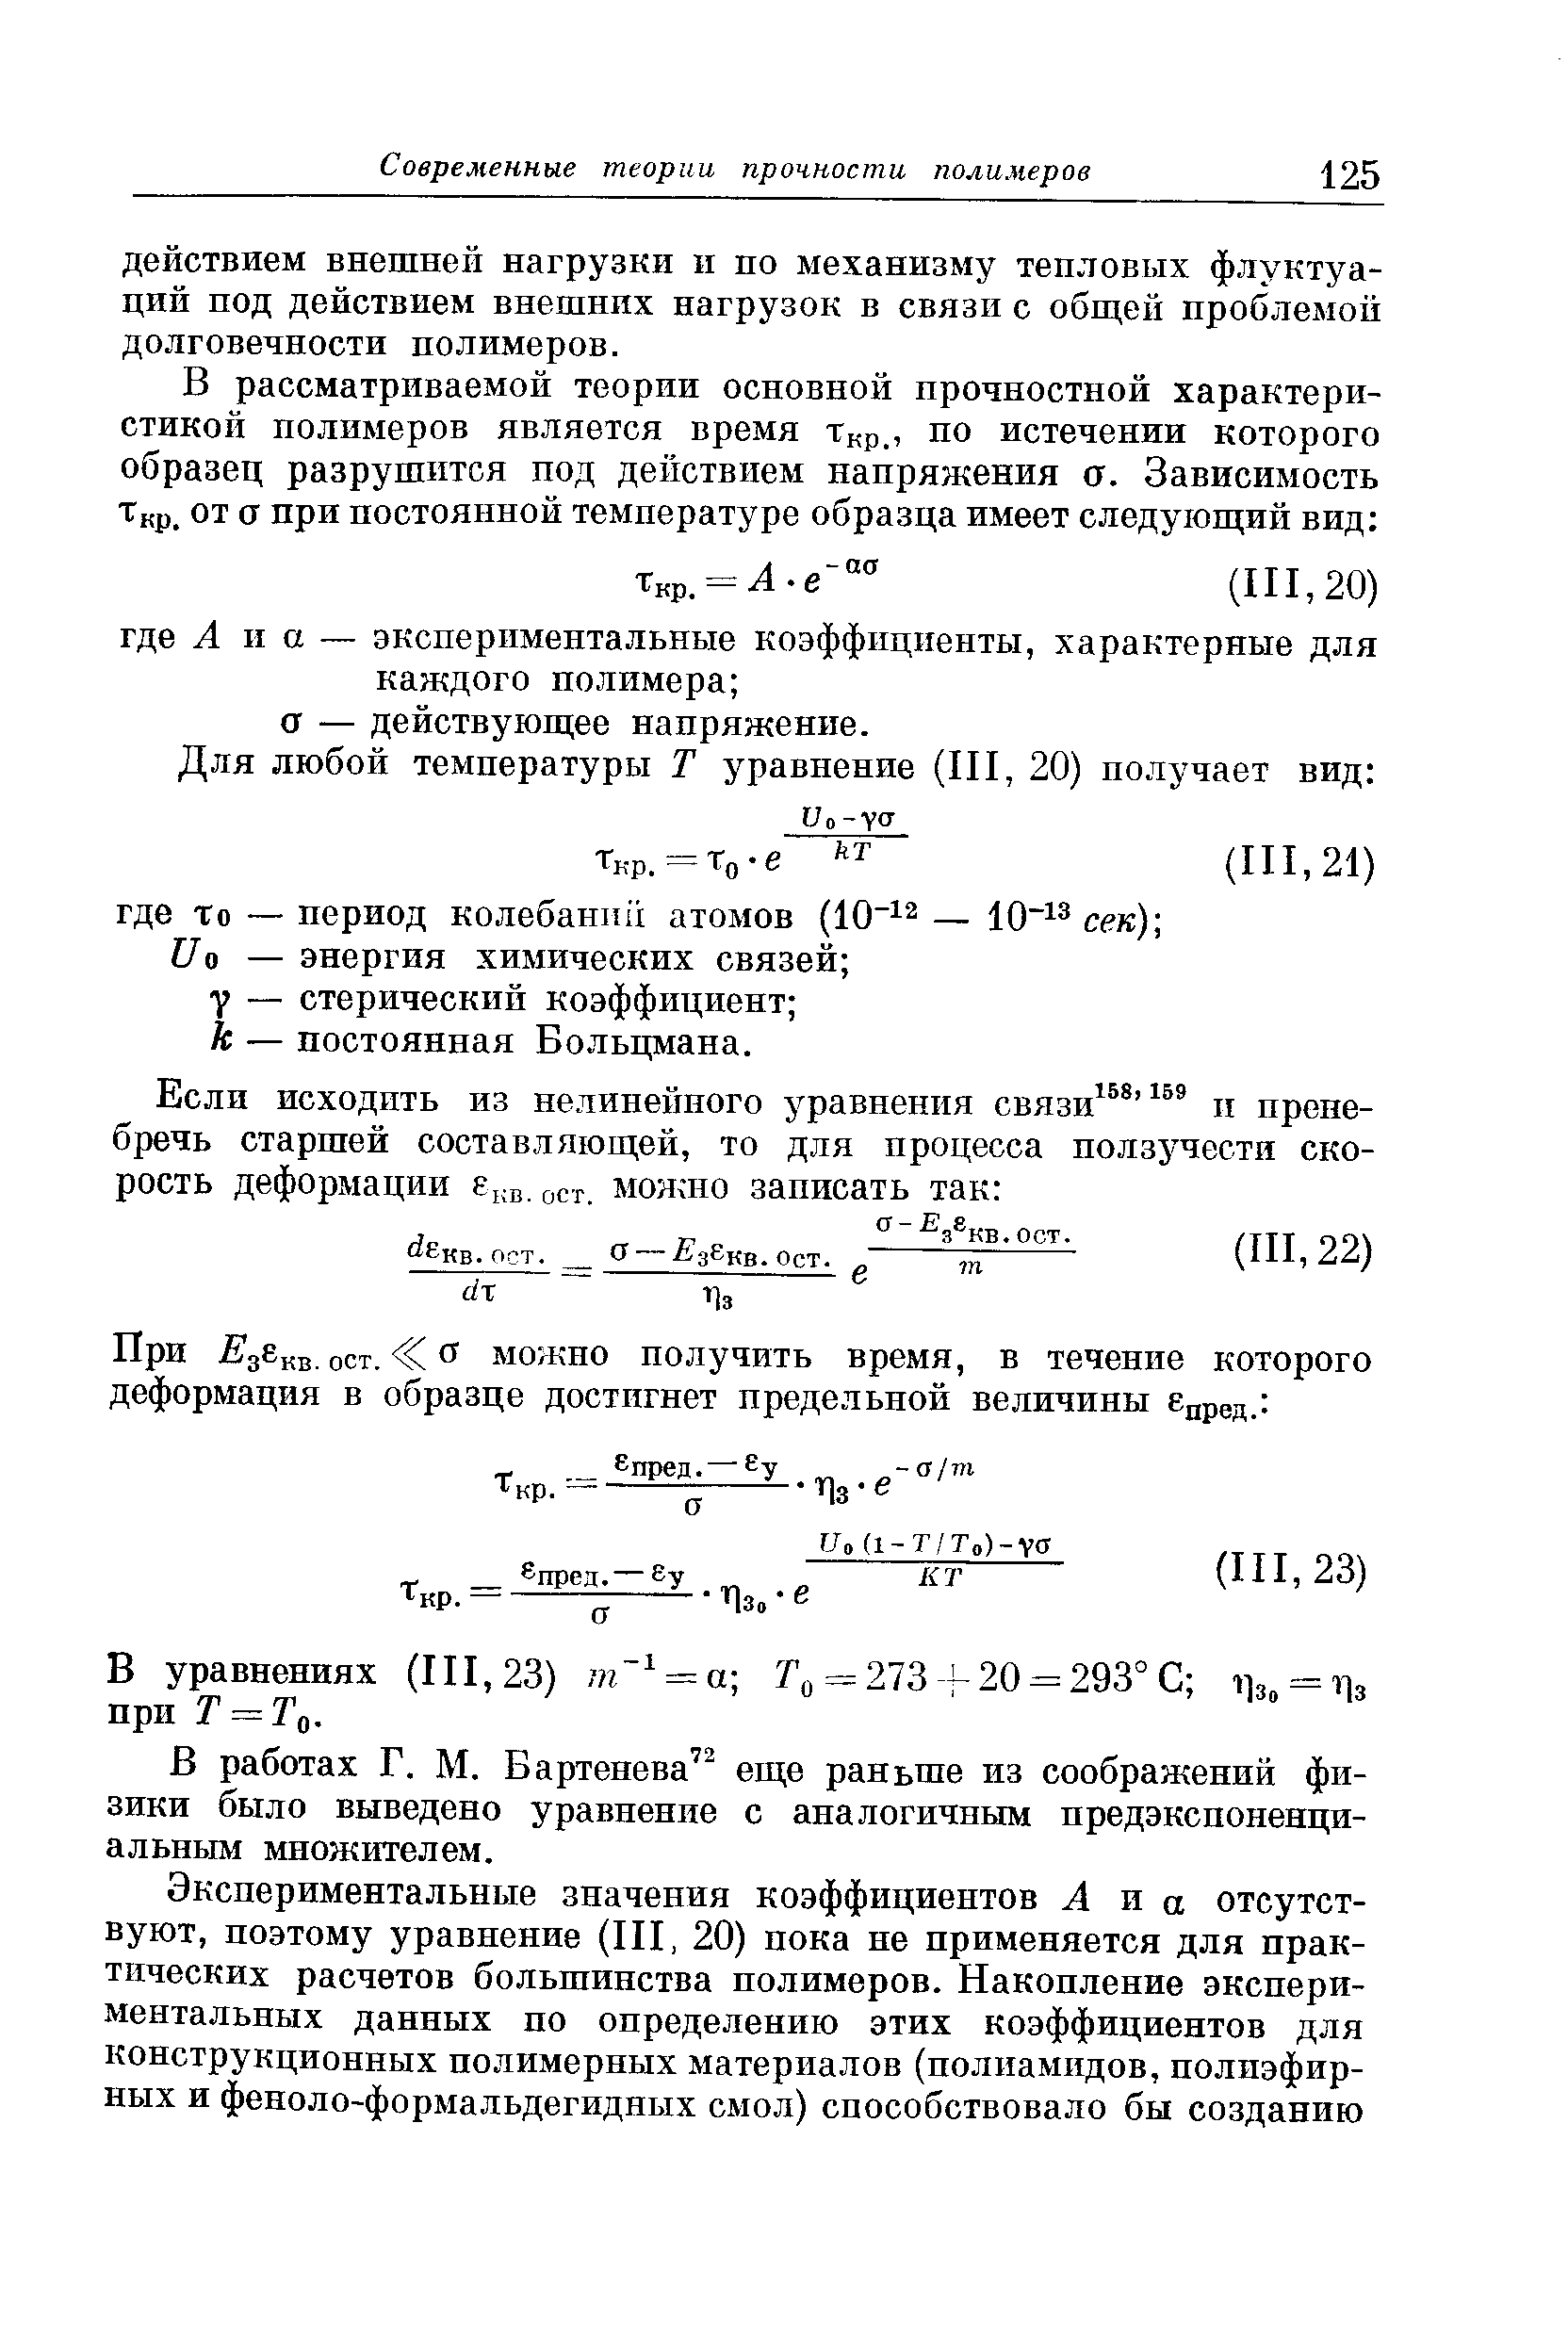 В работах Г. М. Бартенева еще раньше из соображений физики было выведено уравнение с аналогичным предэкспоненци-альньш множителем.